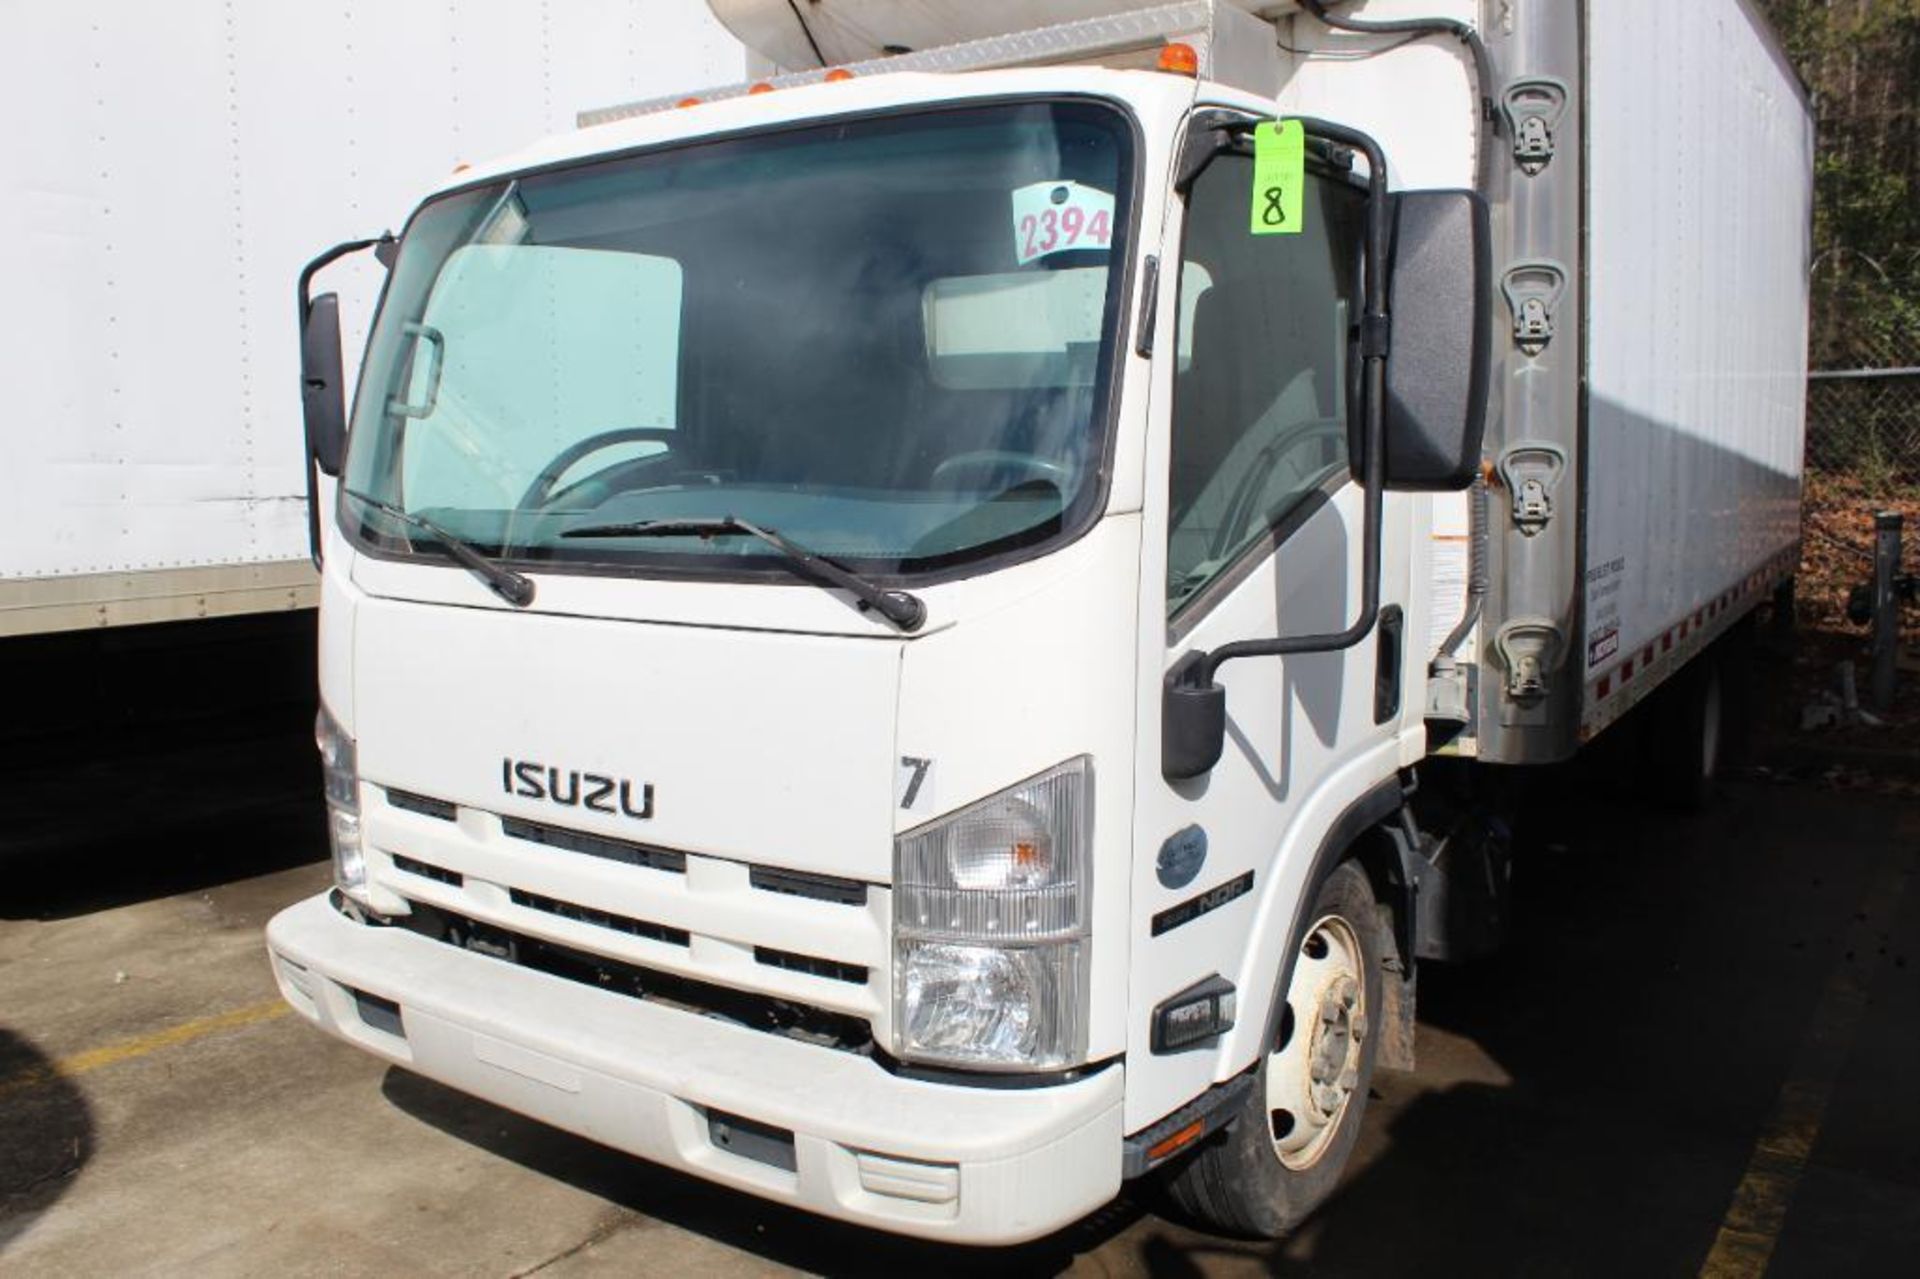 2015 Isuzu NQR Diesel Truck - Image 8 of 44